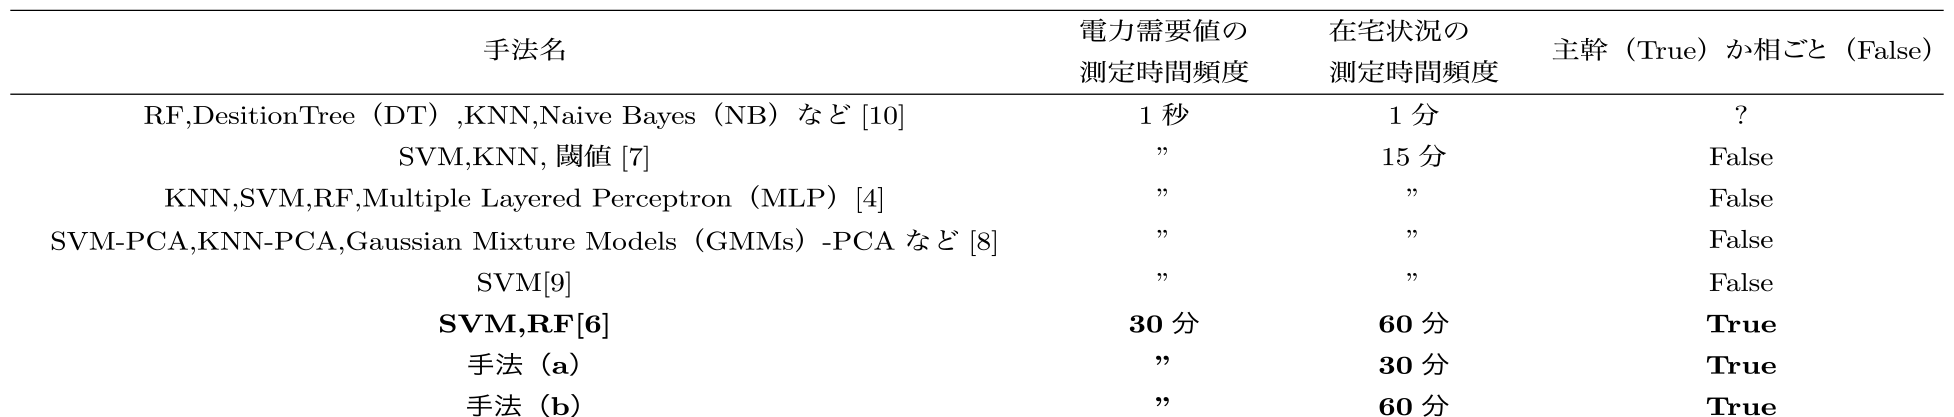 類似度の高い先行研究　Previous studies with high degree of similarity to this paper.